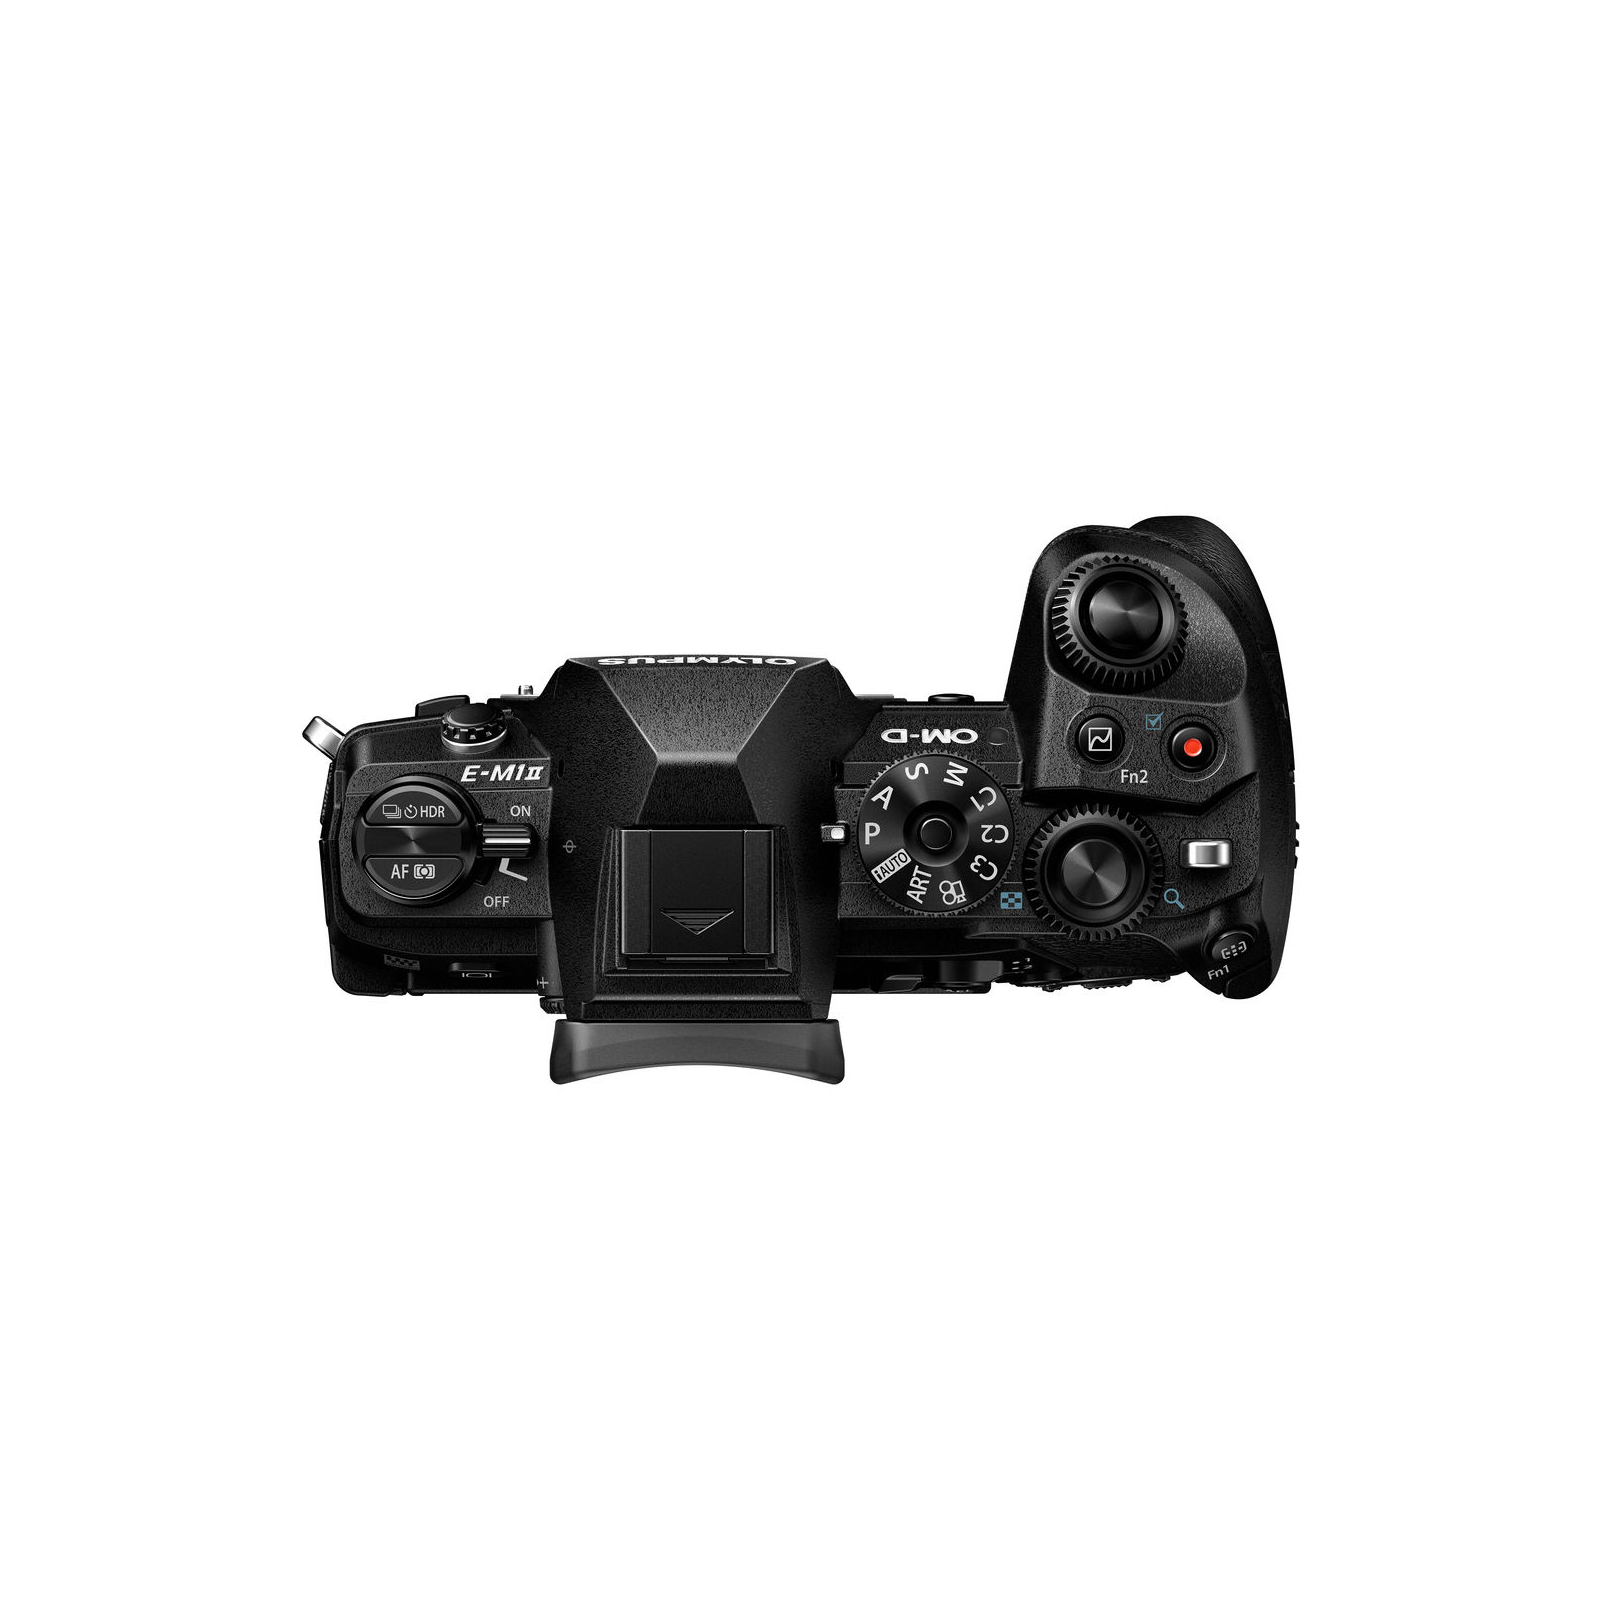 Цифровой фотоаппарат Olympus E-M1 mark II Body black (V207060BE000) изображение 4